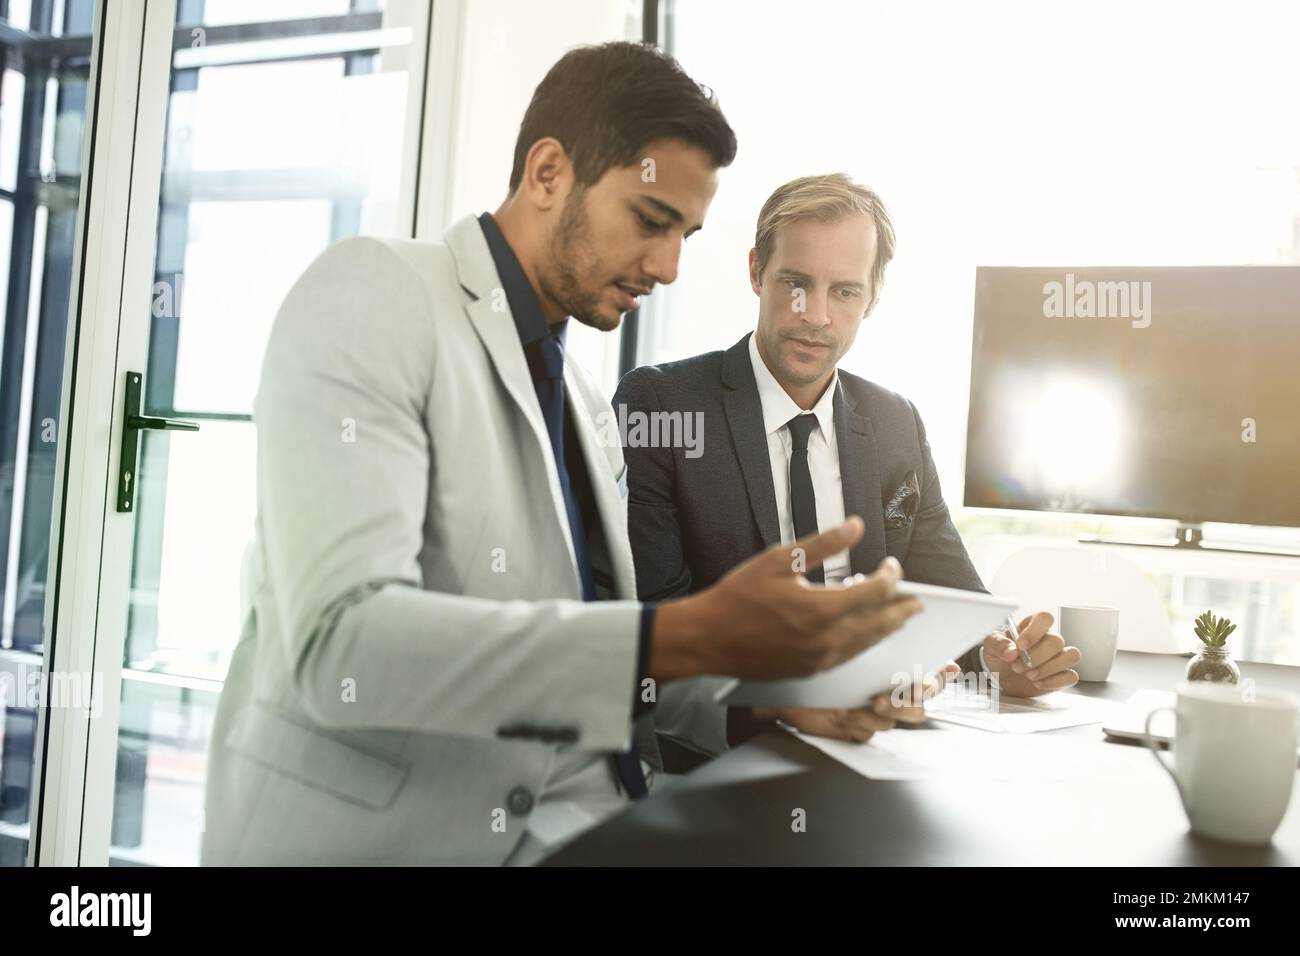 Leur succès repose sur le travail d'équipe. deux hommes d'affaires ayant une discussion dans un bureau. Banque D'Images